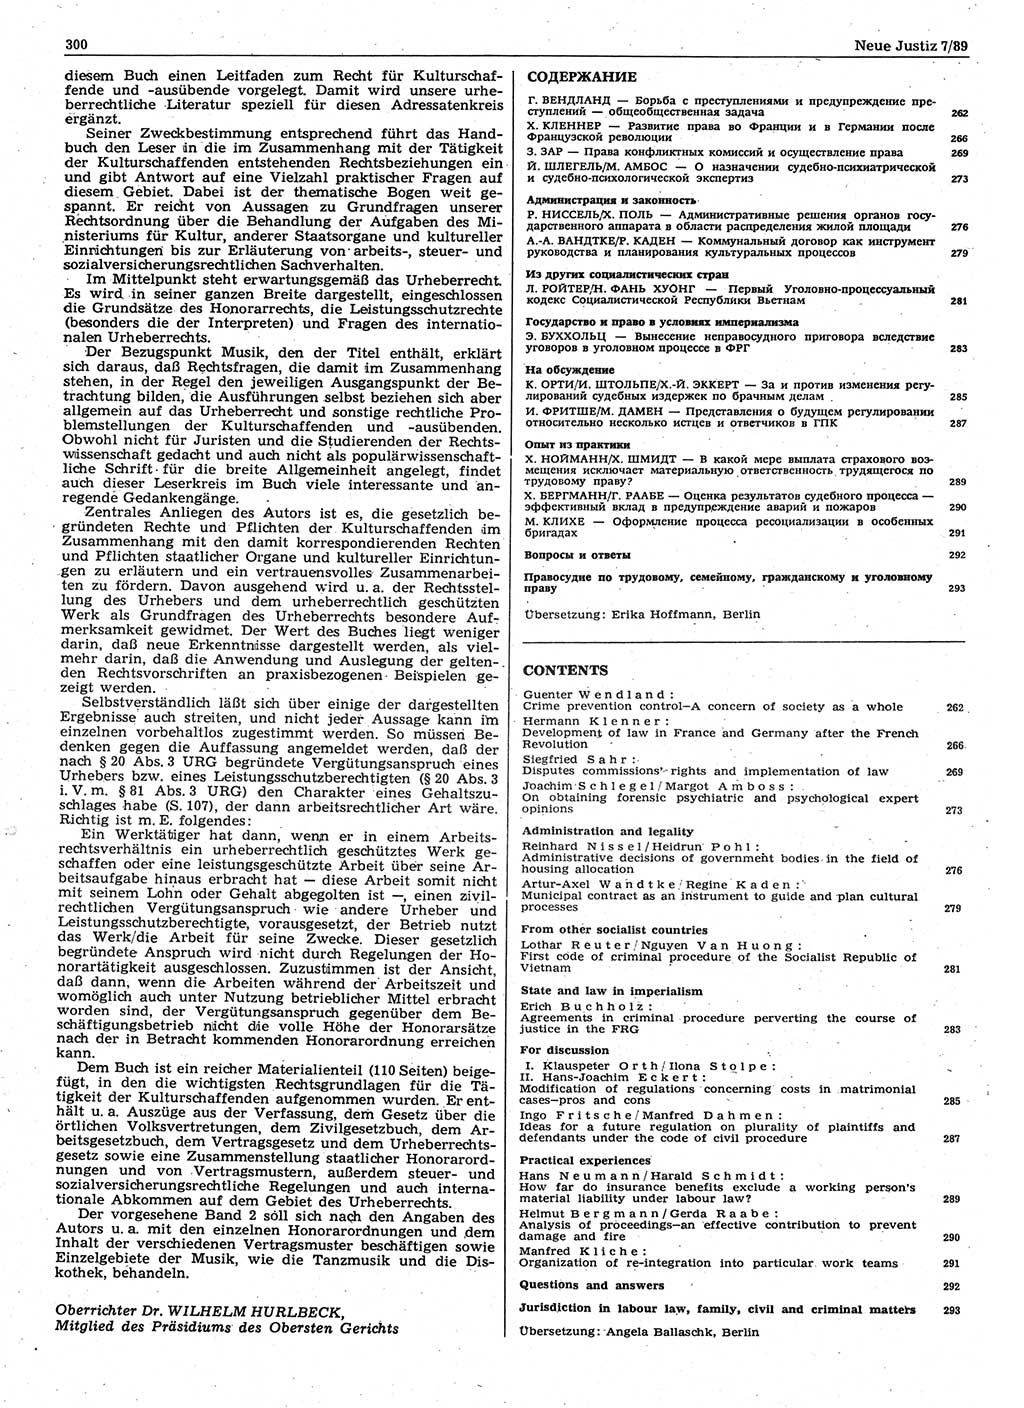 Neue Justiz (NJ), Zeitschrift für sozialistisches Recht und Gesetzlichkeit [Deutsche Demokratische Republik (DDR)], 43. Jahrgang 1989, Seite 300 (NJ DDR 1989, S. 300)